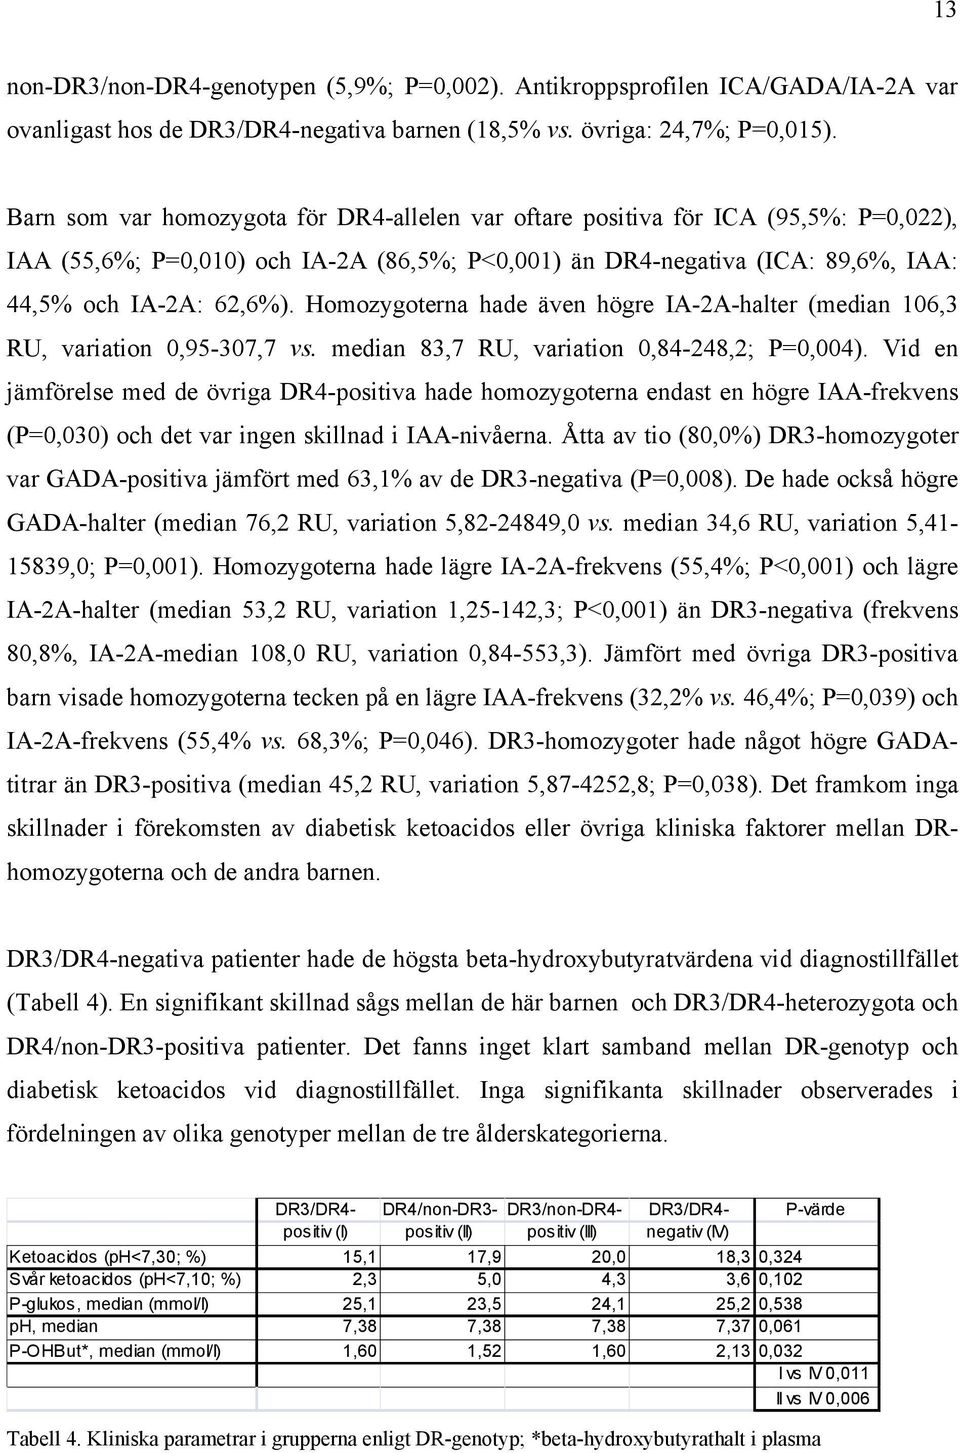 Homozygoterna hade även högre IA-2A-halter (median 106,3 RU, variation 0,95-307,7 vs. median 83,7 RU, variation 0,84-248,2; P=0,004).